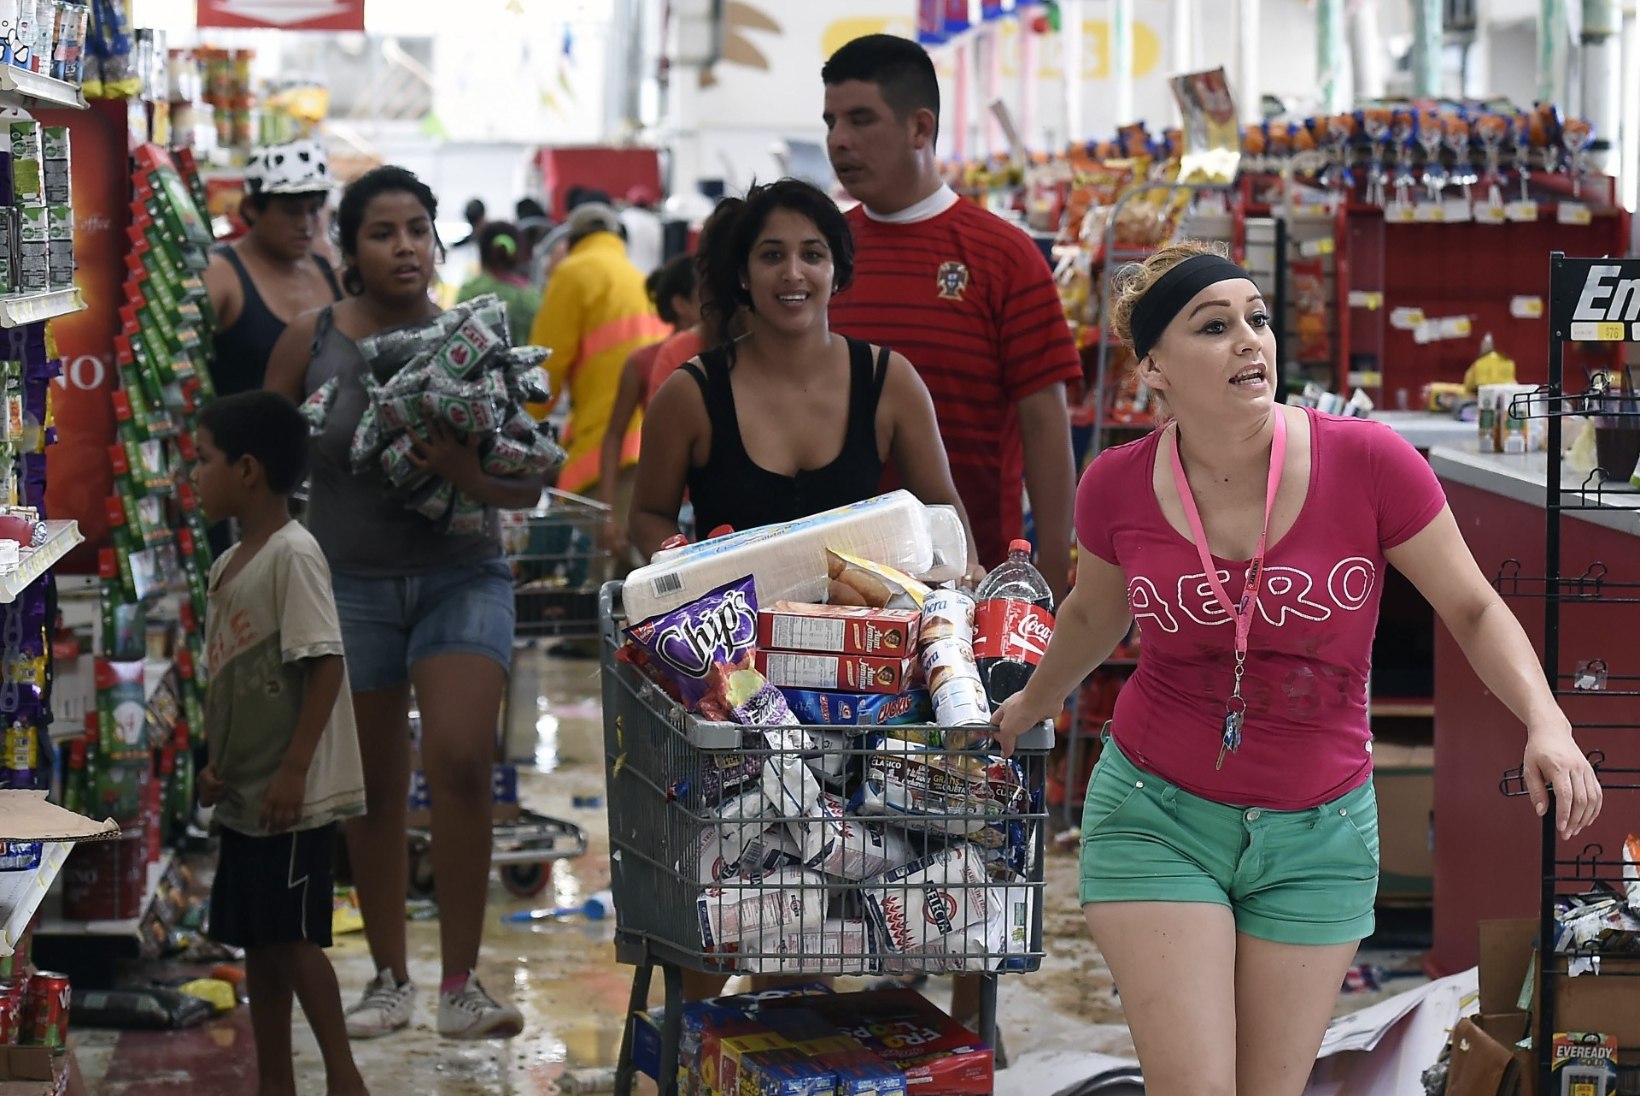 FOTOD: orkaani poolt laastatud Baja Californias rüüstavad inimesed poode